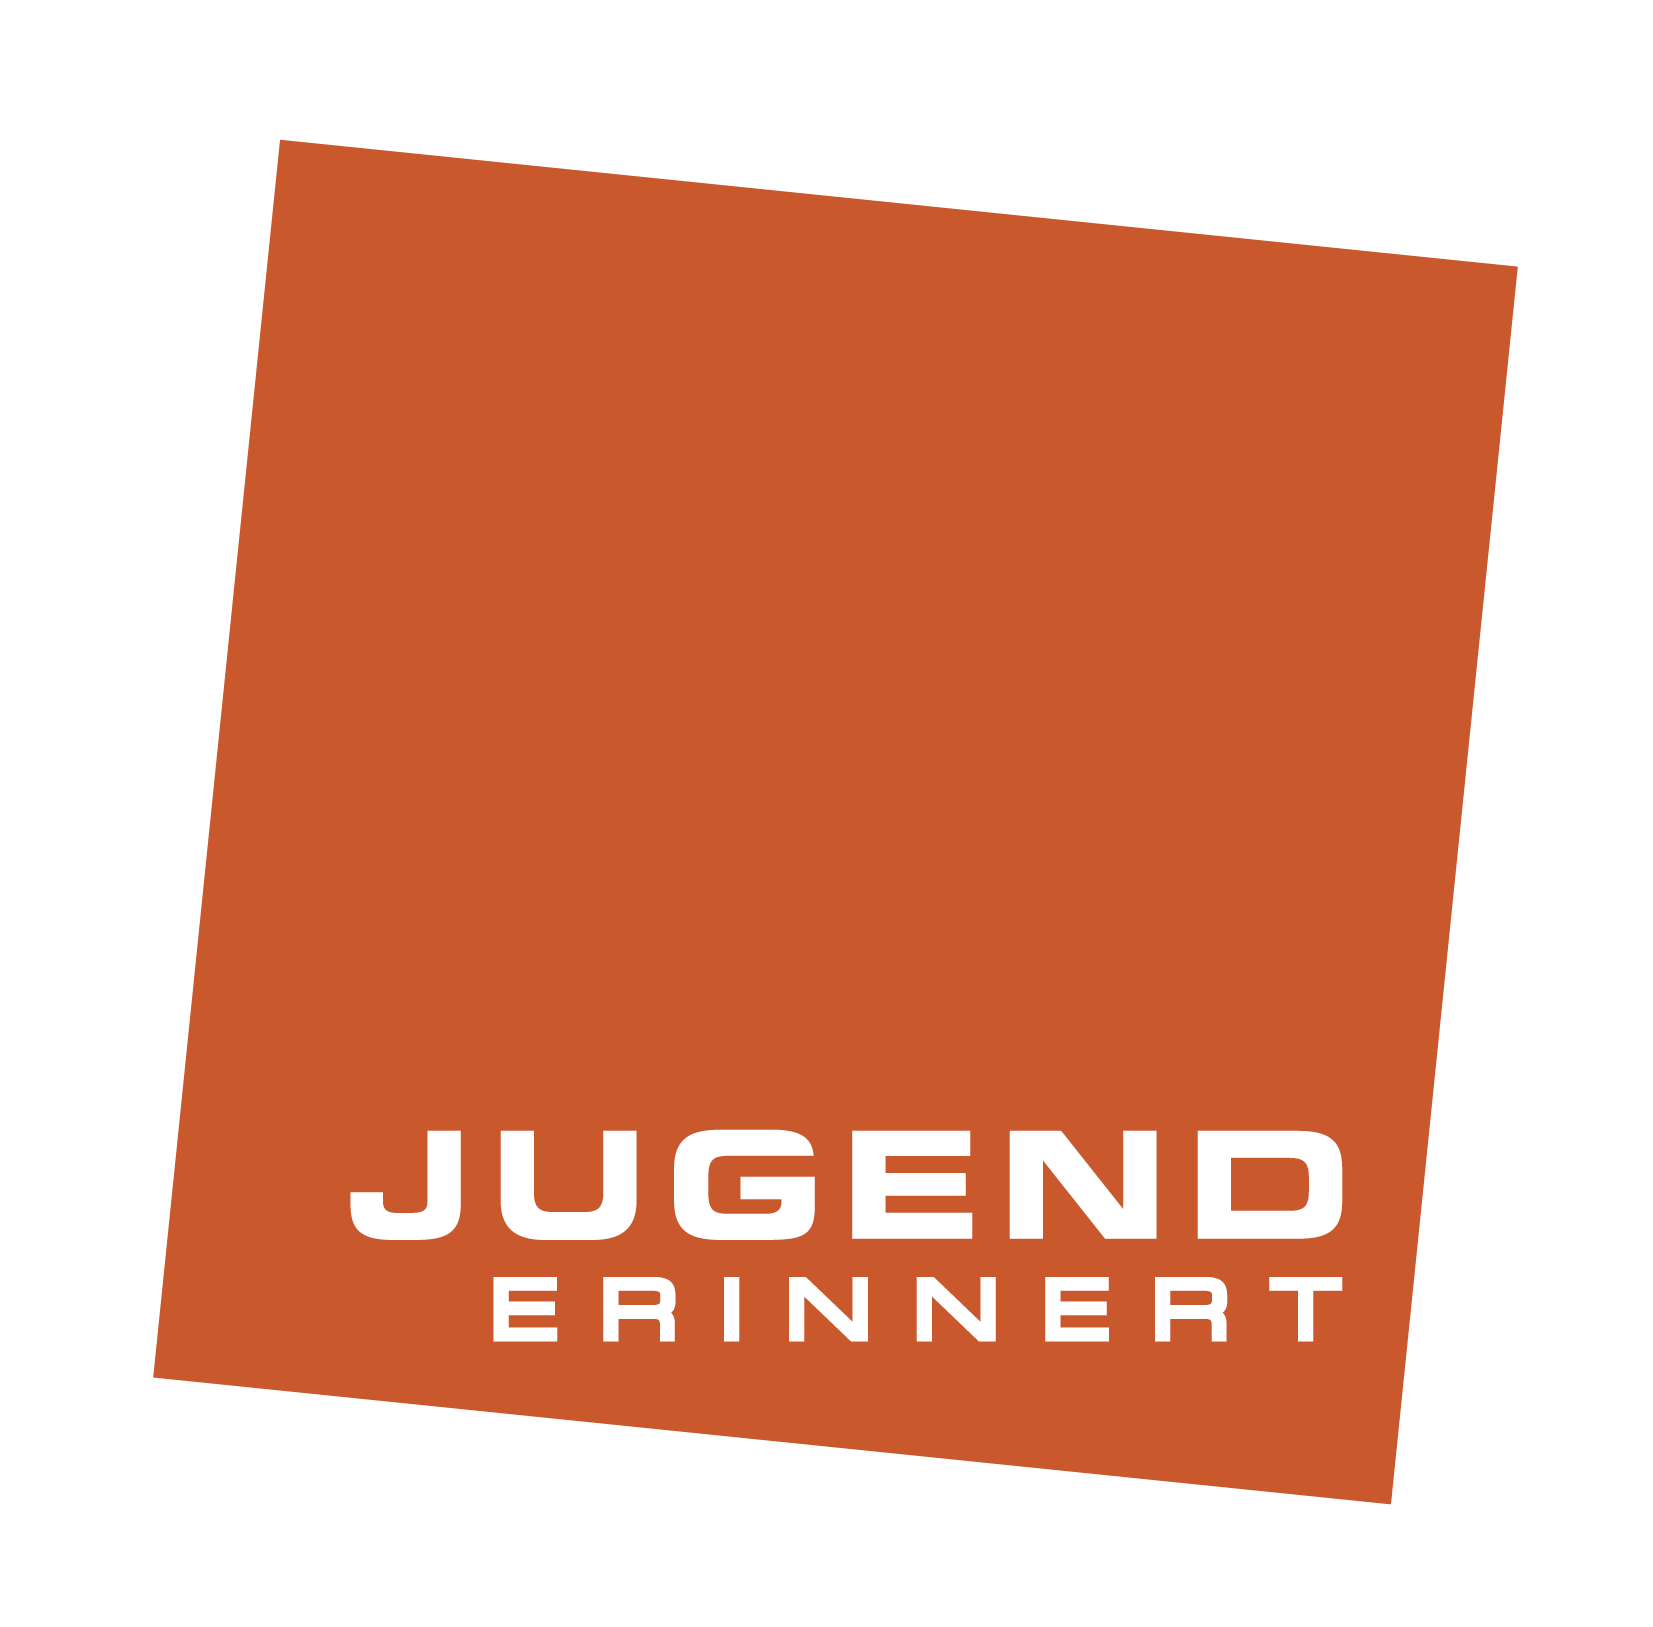 jugend erinnert logo